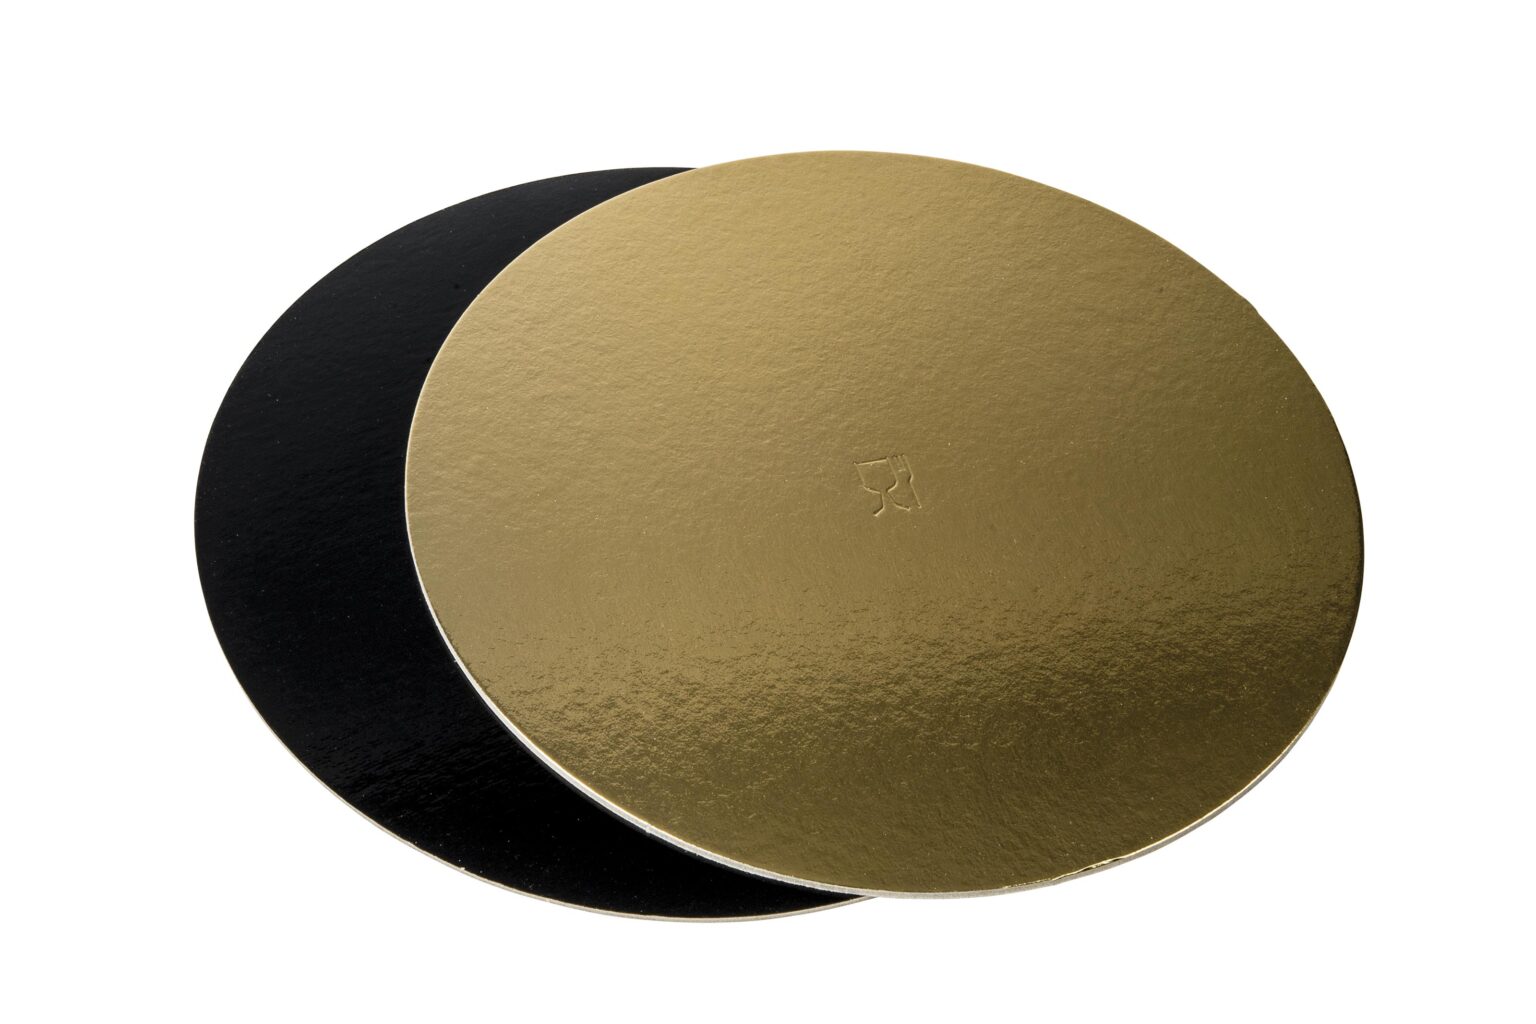 Discuri groase auriu/negru - Discuri groase auriu/negru 2400 gr OE22cm - 10 buc/set